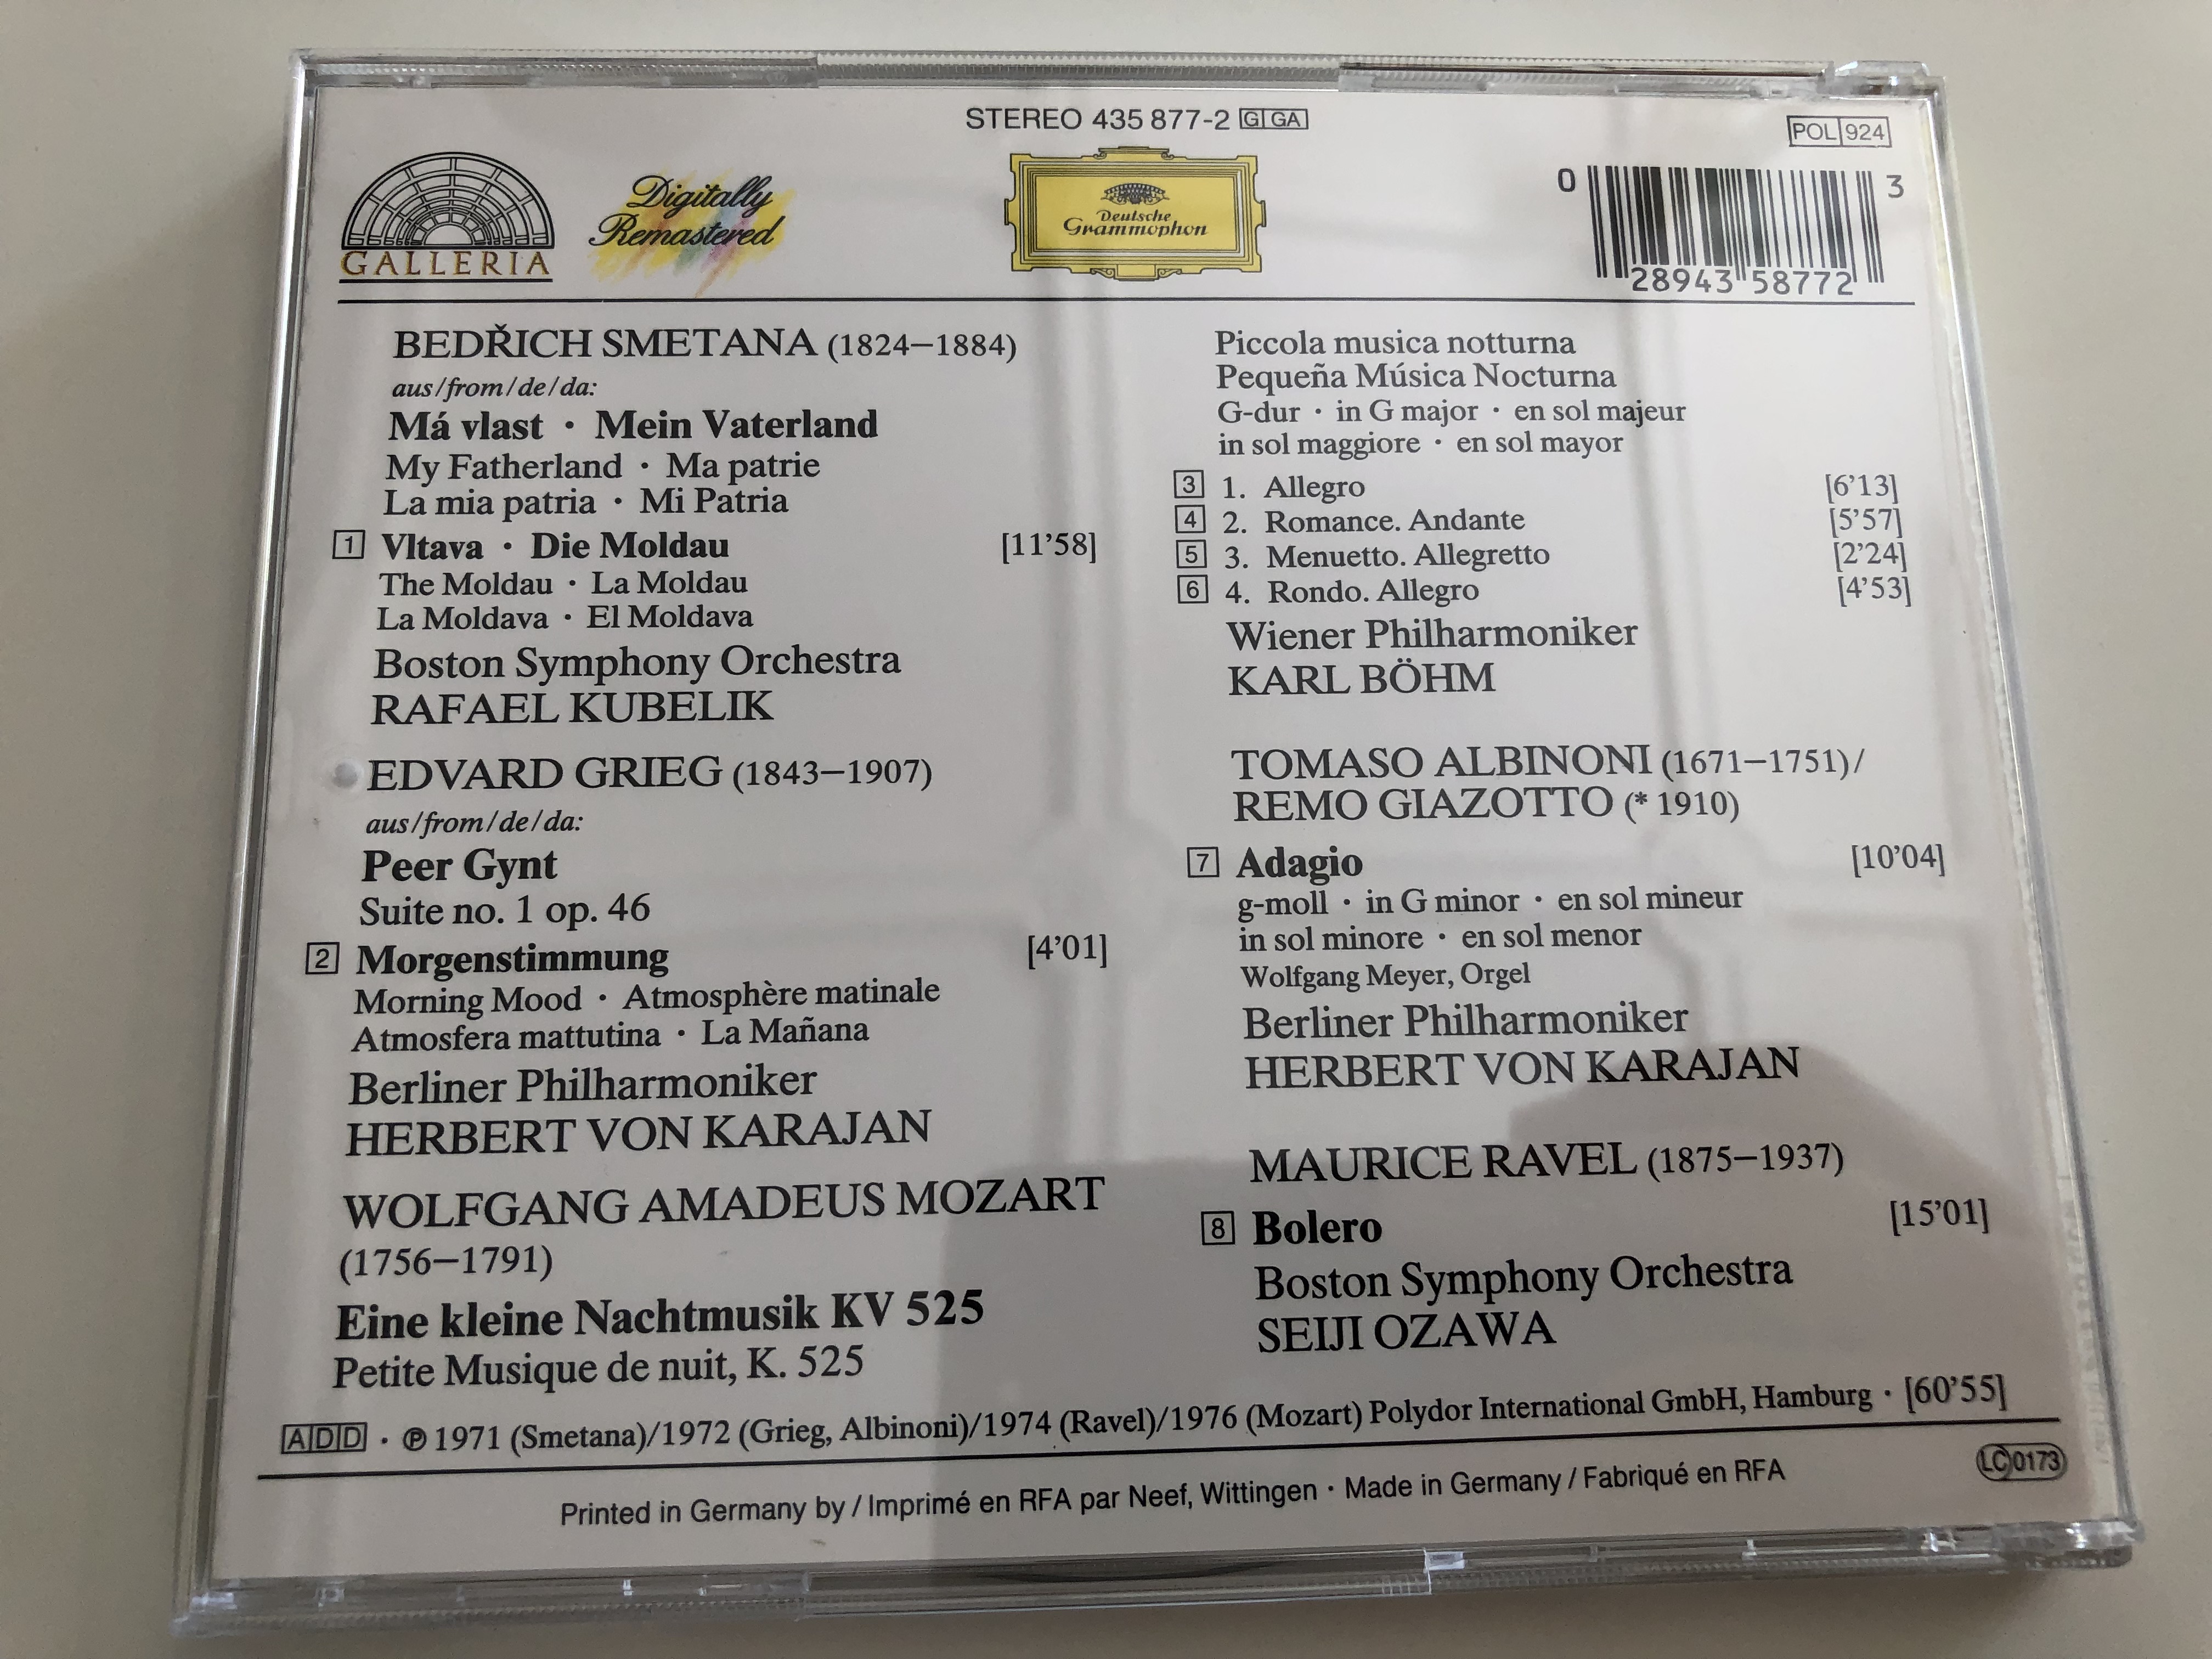 galleria-ravel-bolero-mozart-eine-kleine-nachtmusik-smetana-moldau-albinoni-adagio-grieg-peer-gynt-morgenstimmung-morning-deutsche-grammophon-audio-cd-435-877-2-6-.jpg